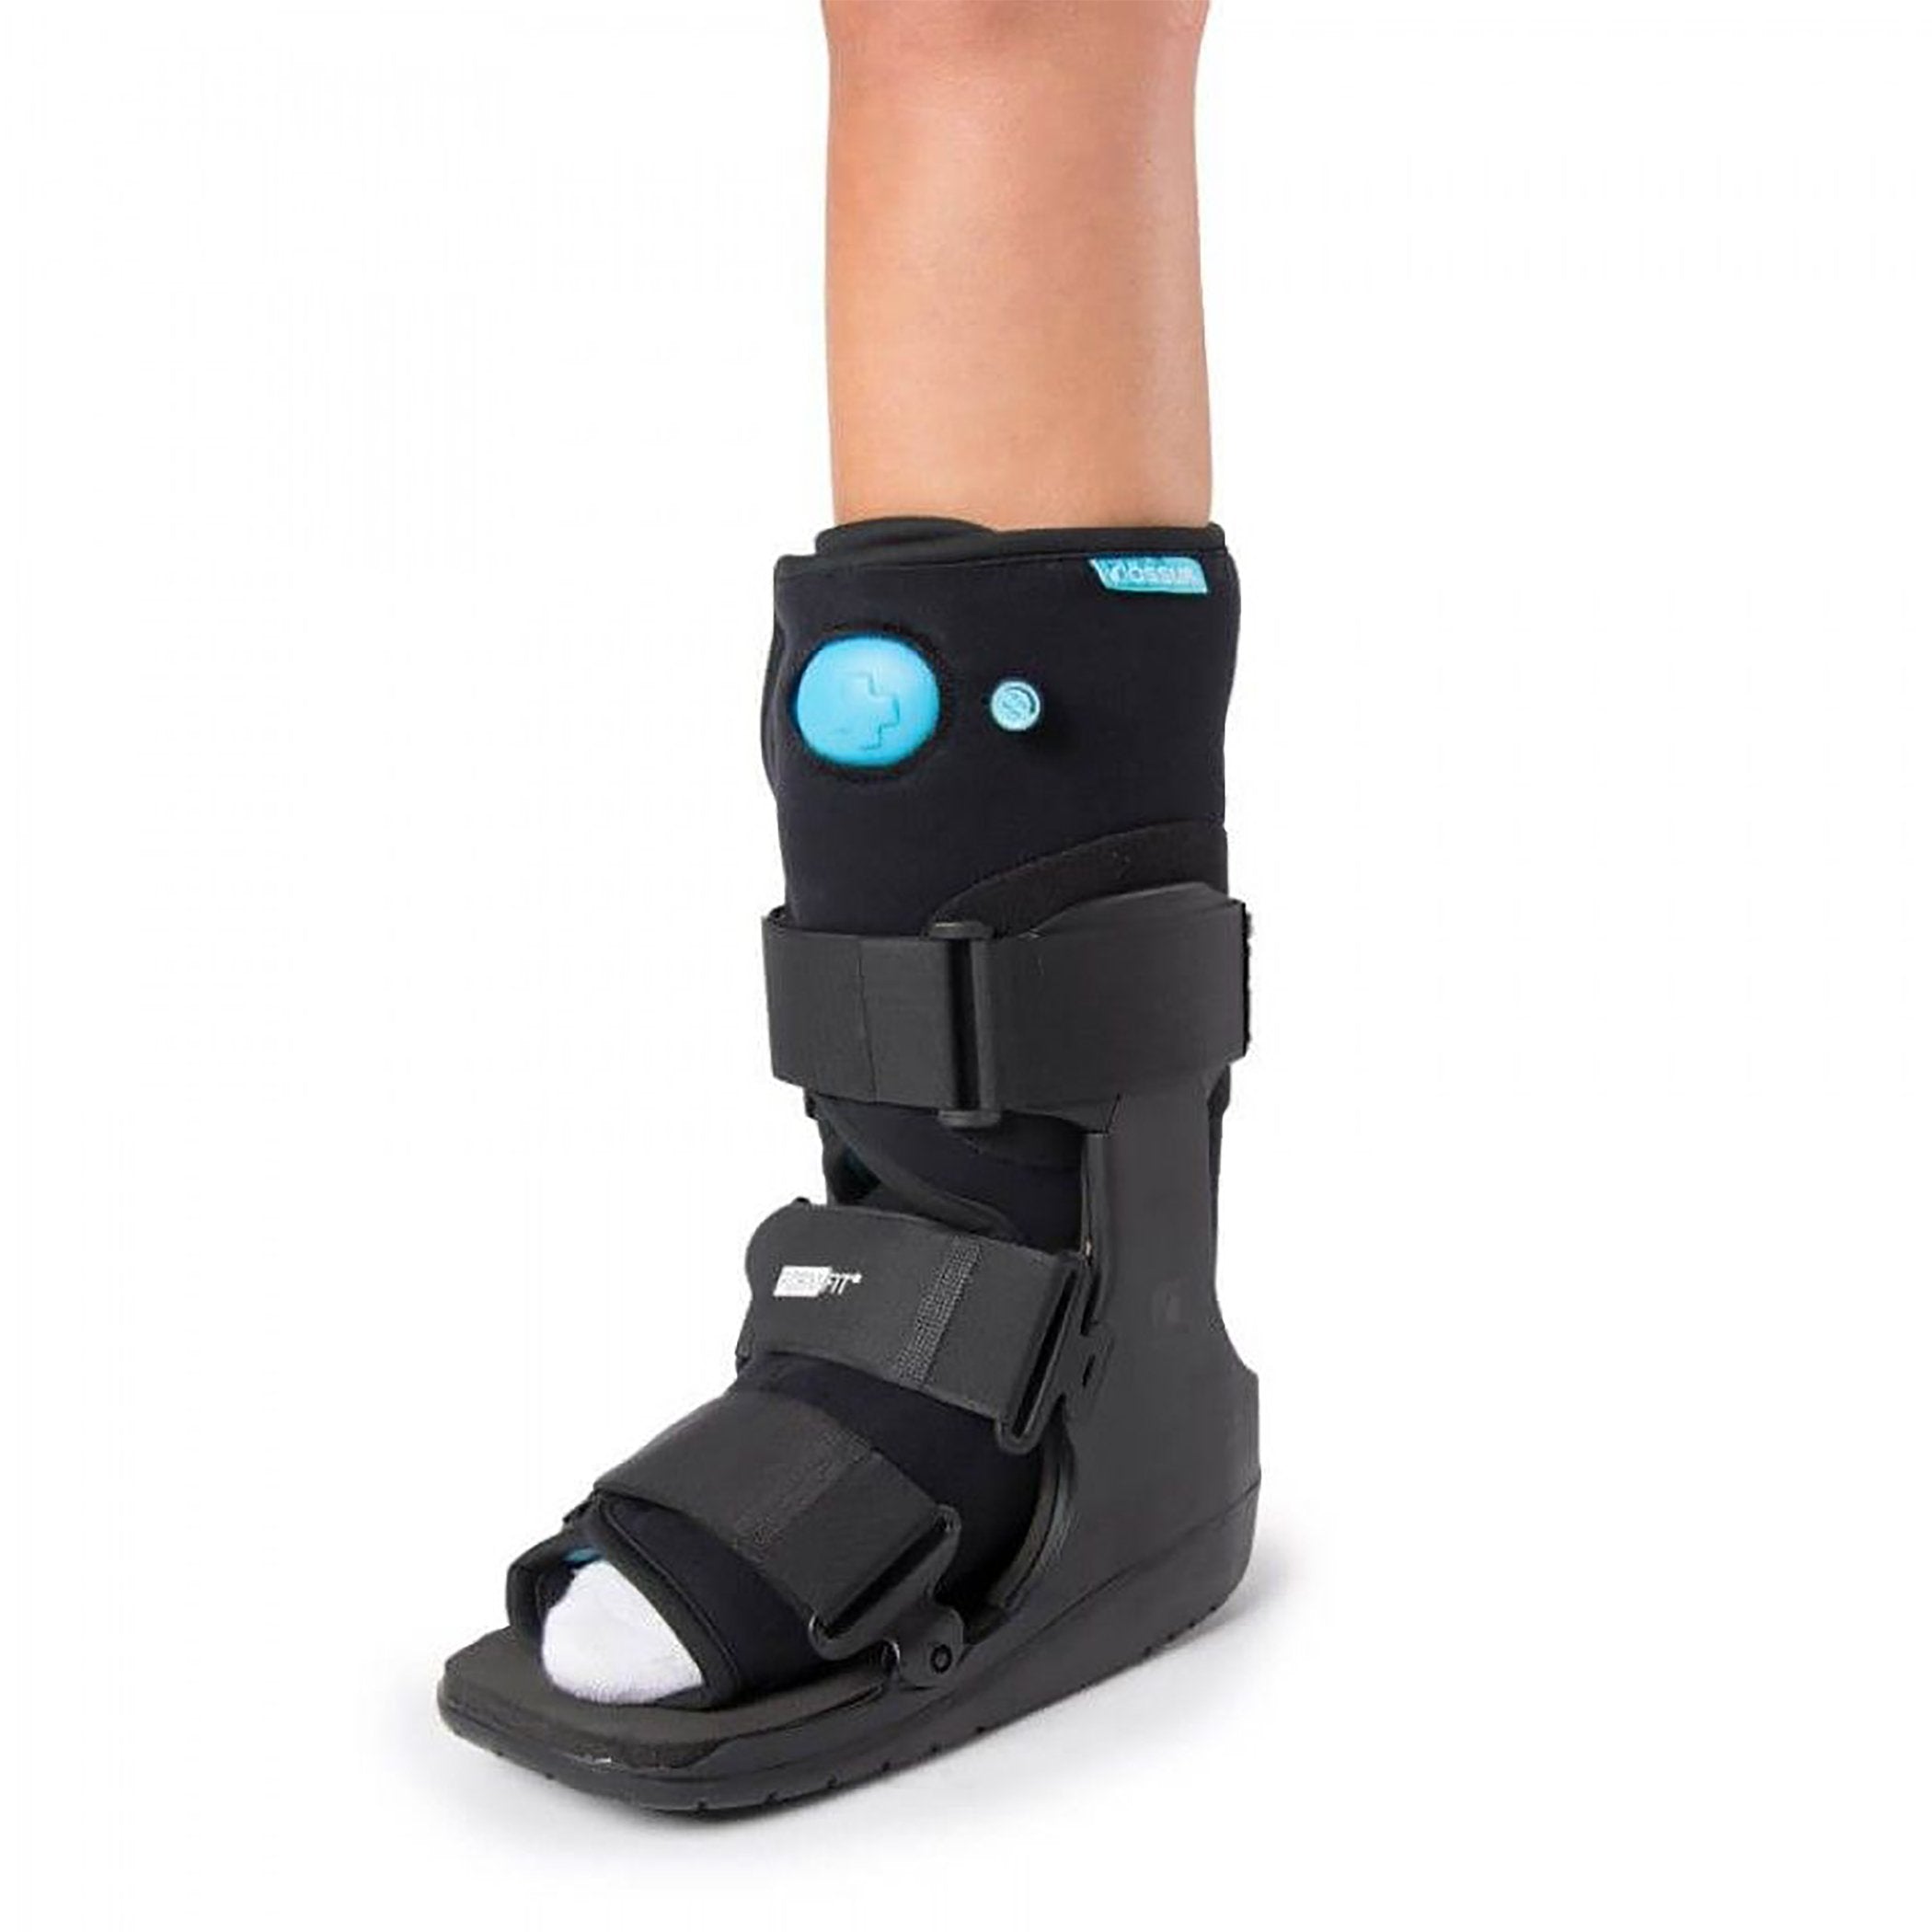 Air Walker Boot Ossur® FormFit® Medium Left or Right Foot Adult